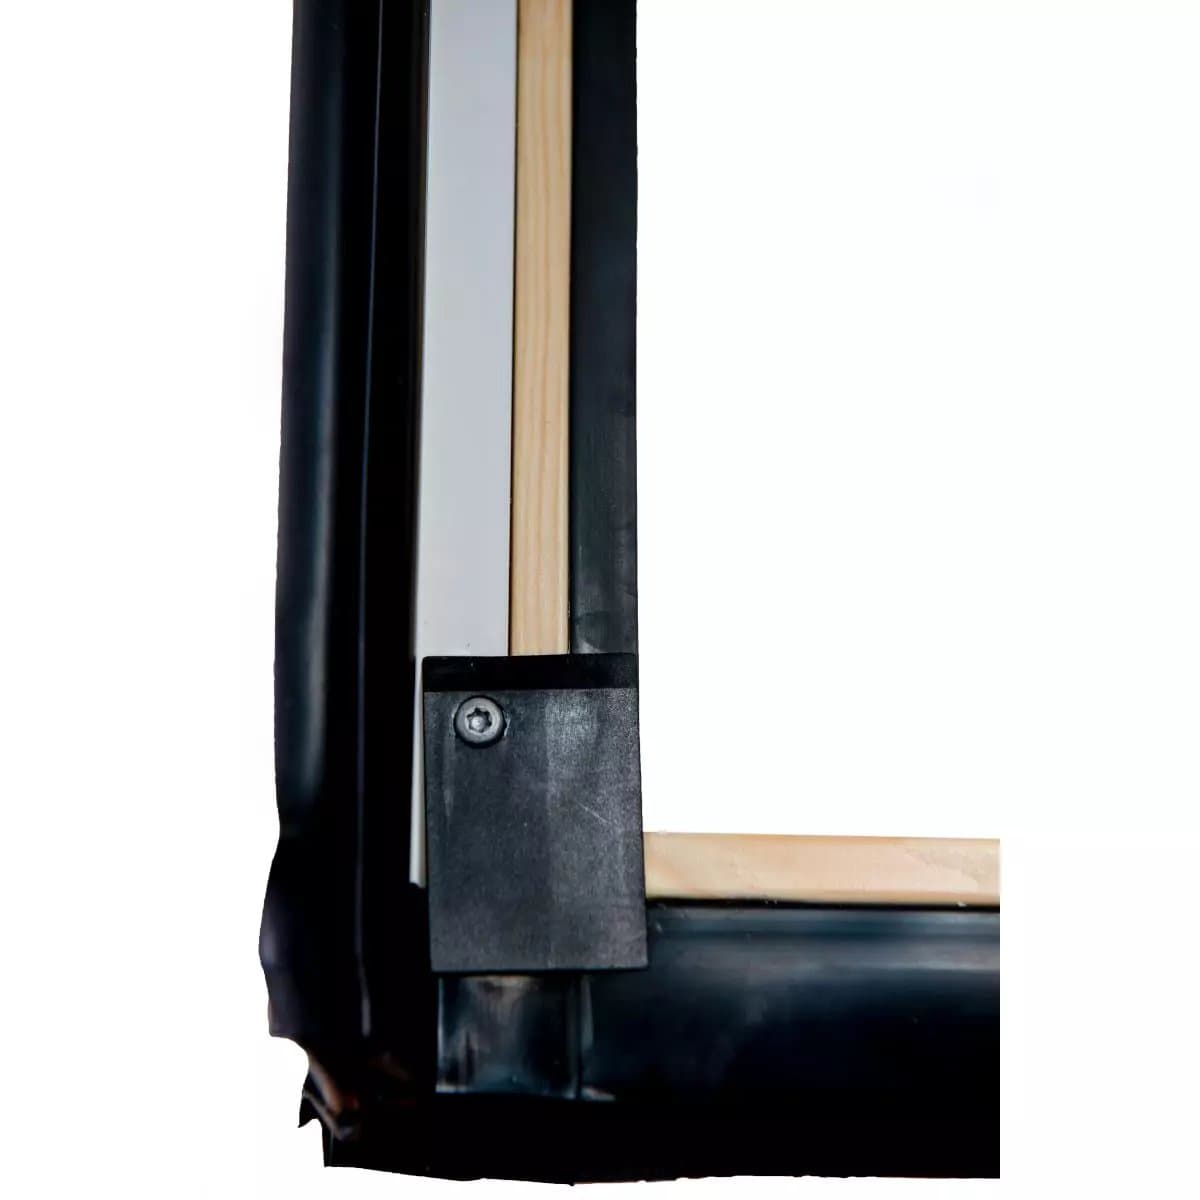 Окно мансардное деревянное c электроприводом Designo R49 H2E. 2 камерное. Электроуправление. ThermoBlock WD.